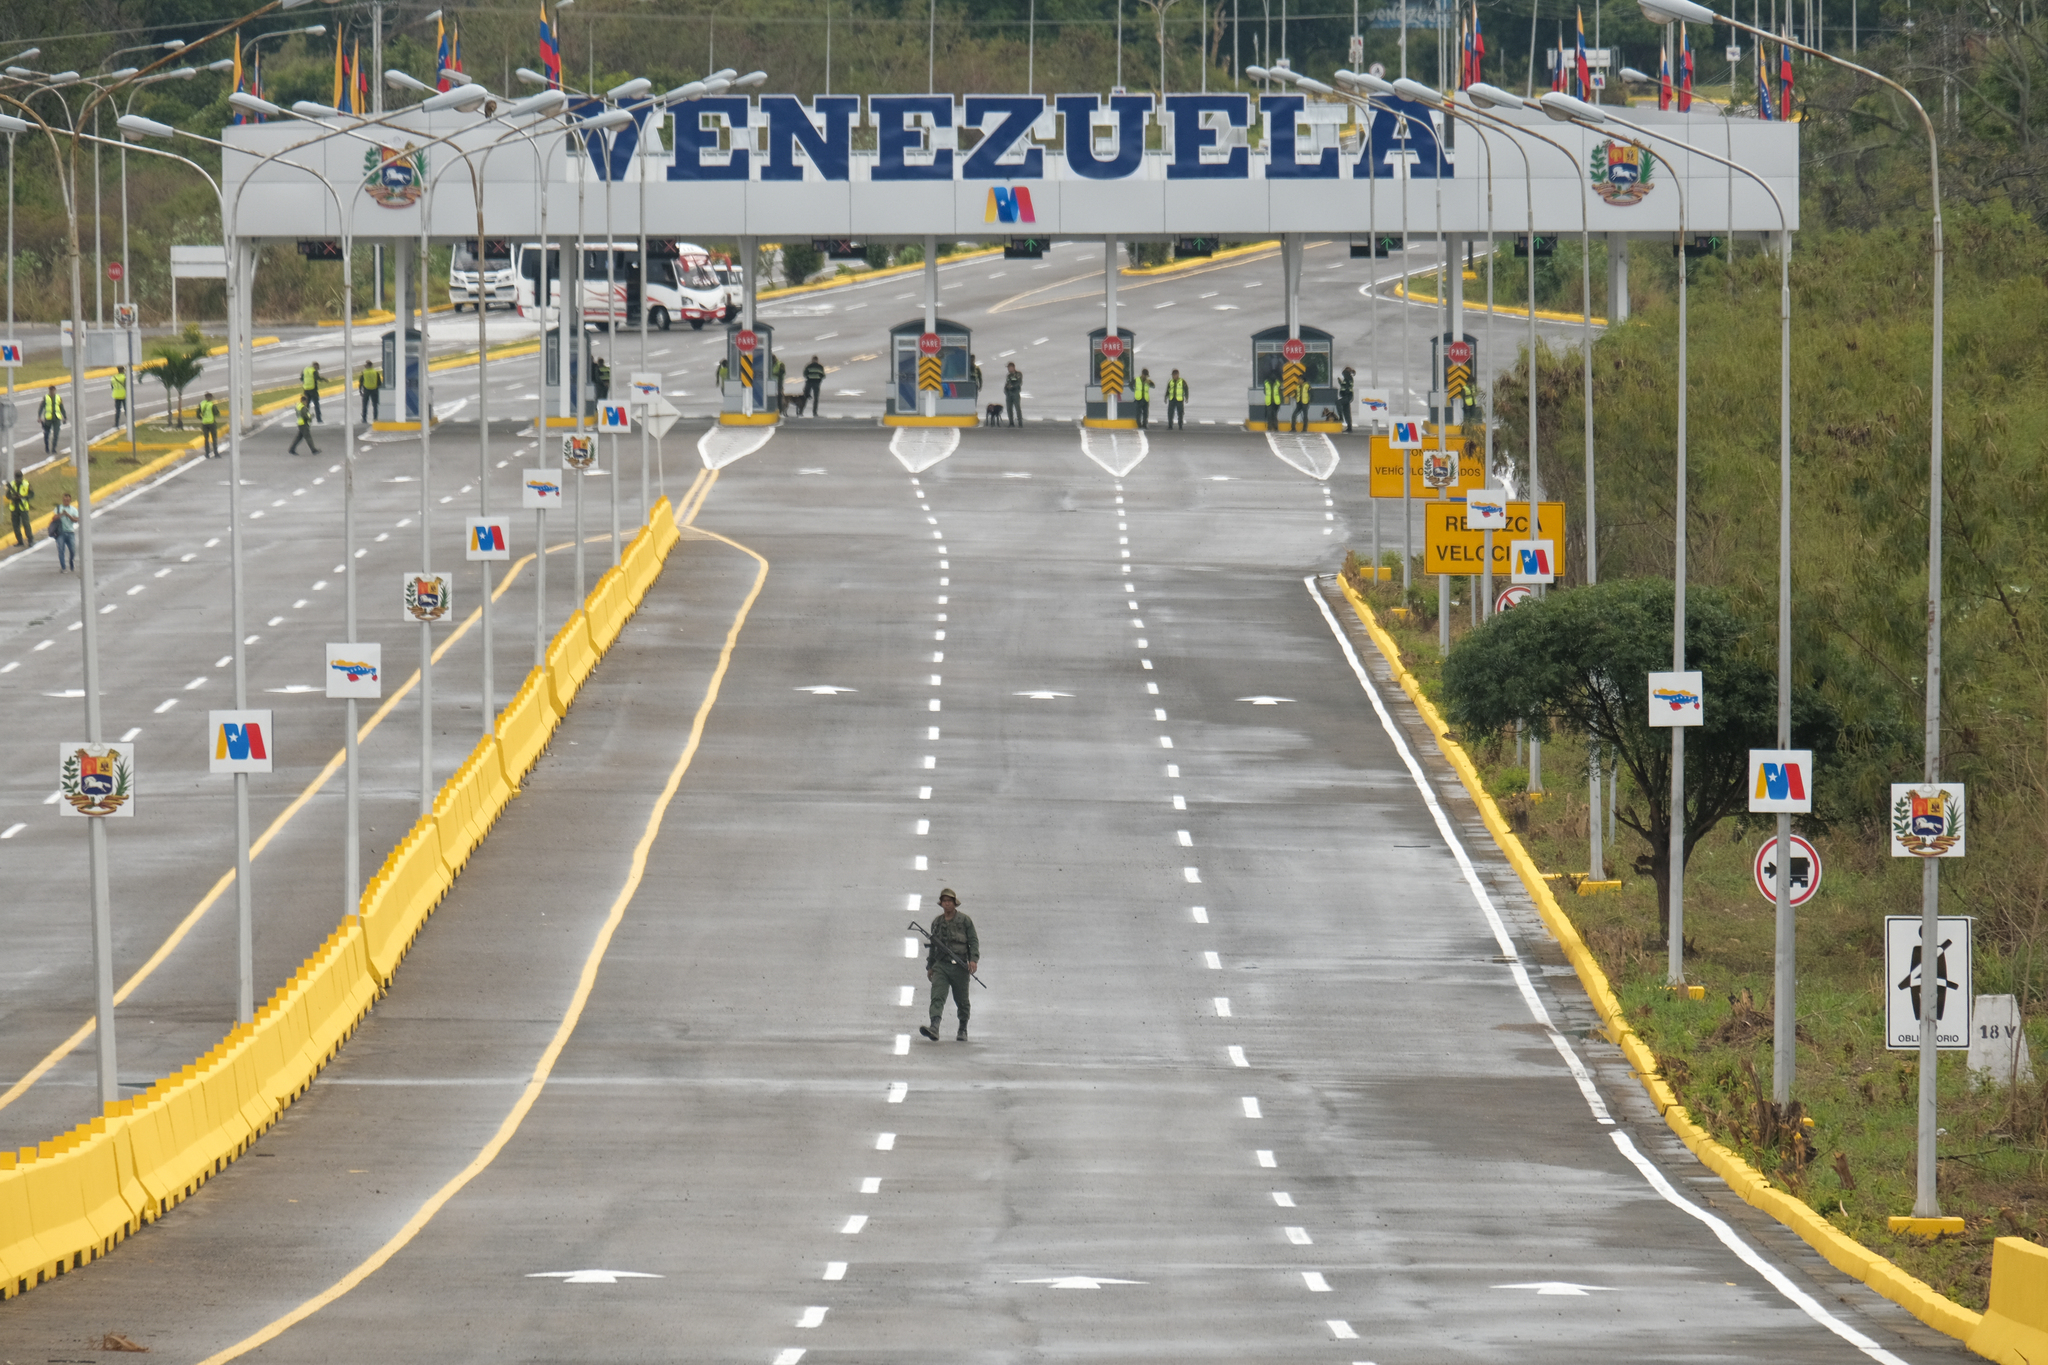 Venezuela Colombia Bridge soldier Tienditas San Antonio Tachira